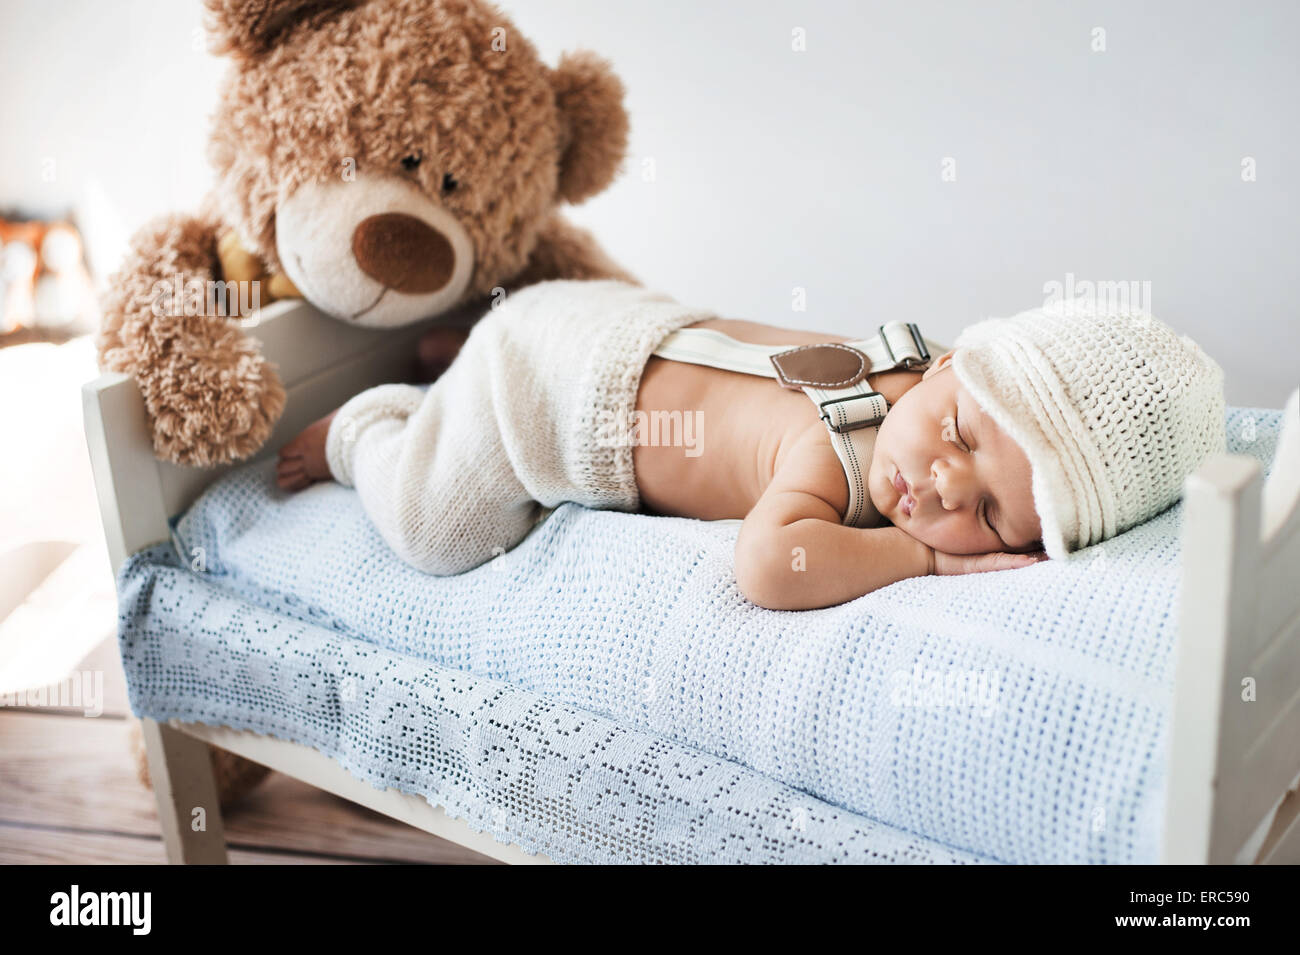 Bebé recién nacido de dos semanas durmiendo en un oso de peluche.